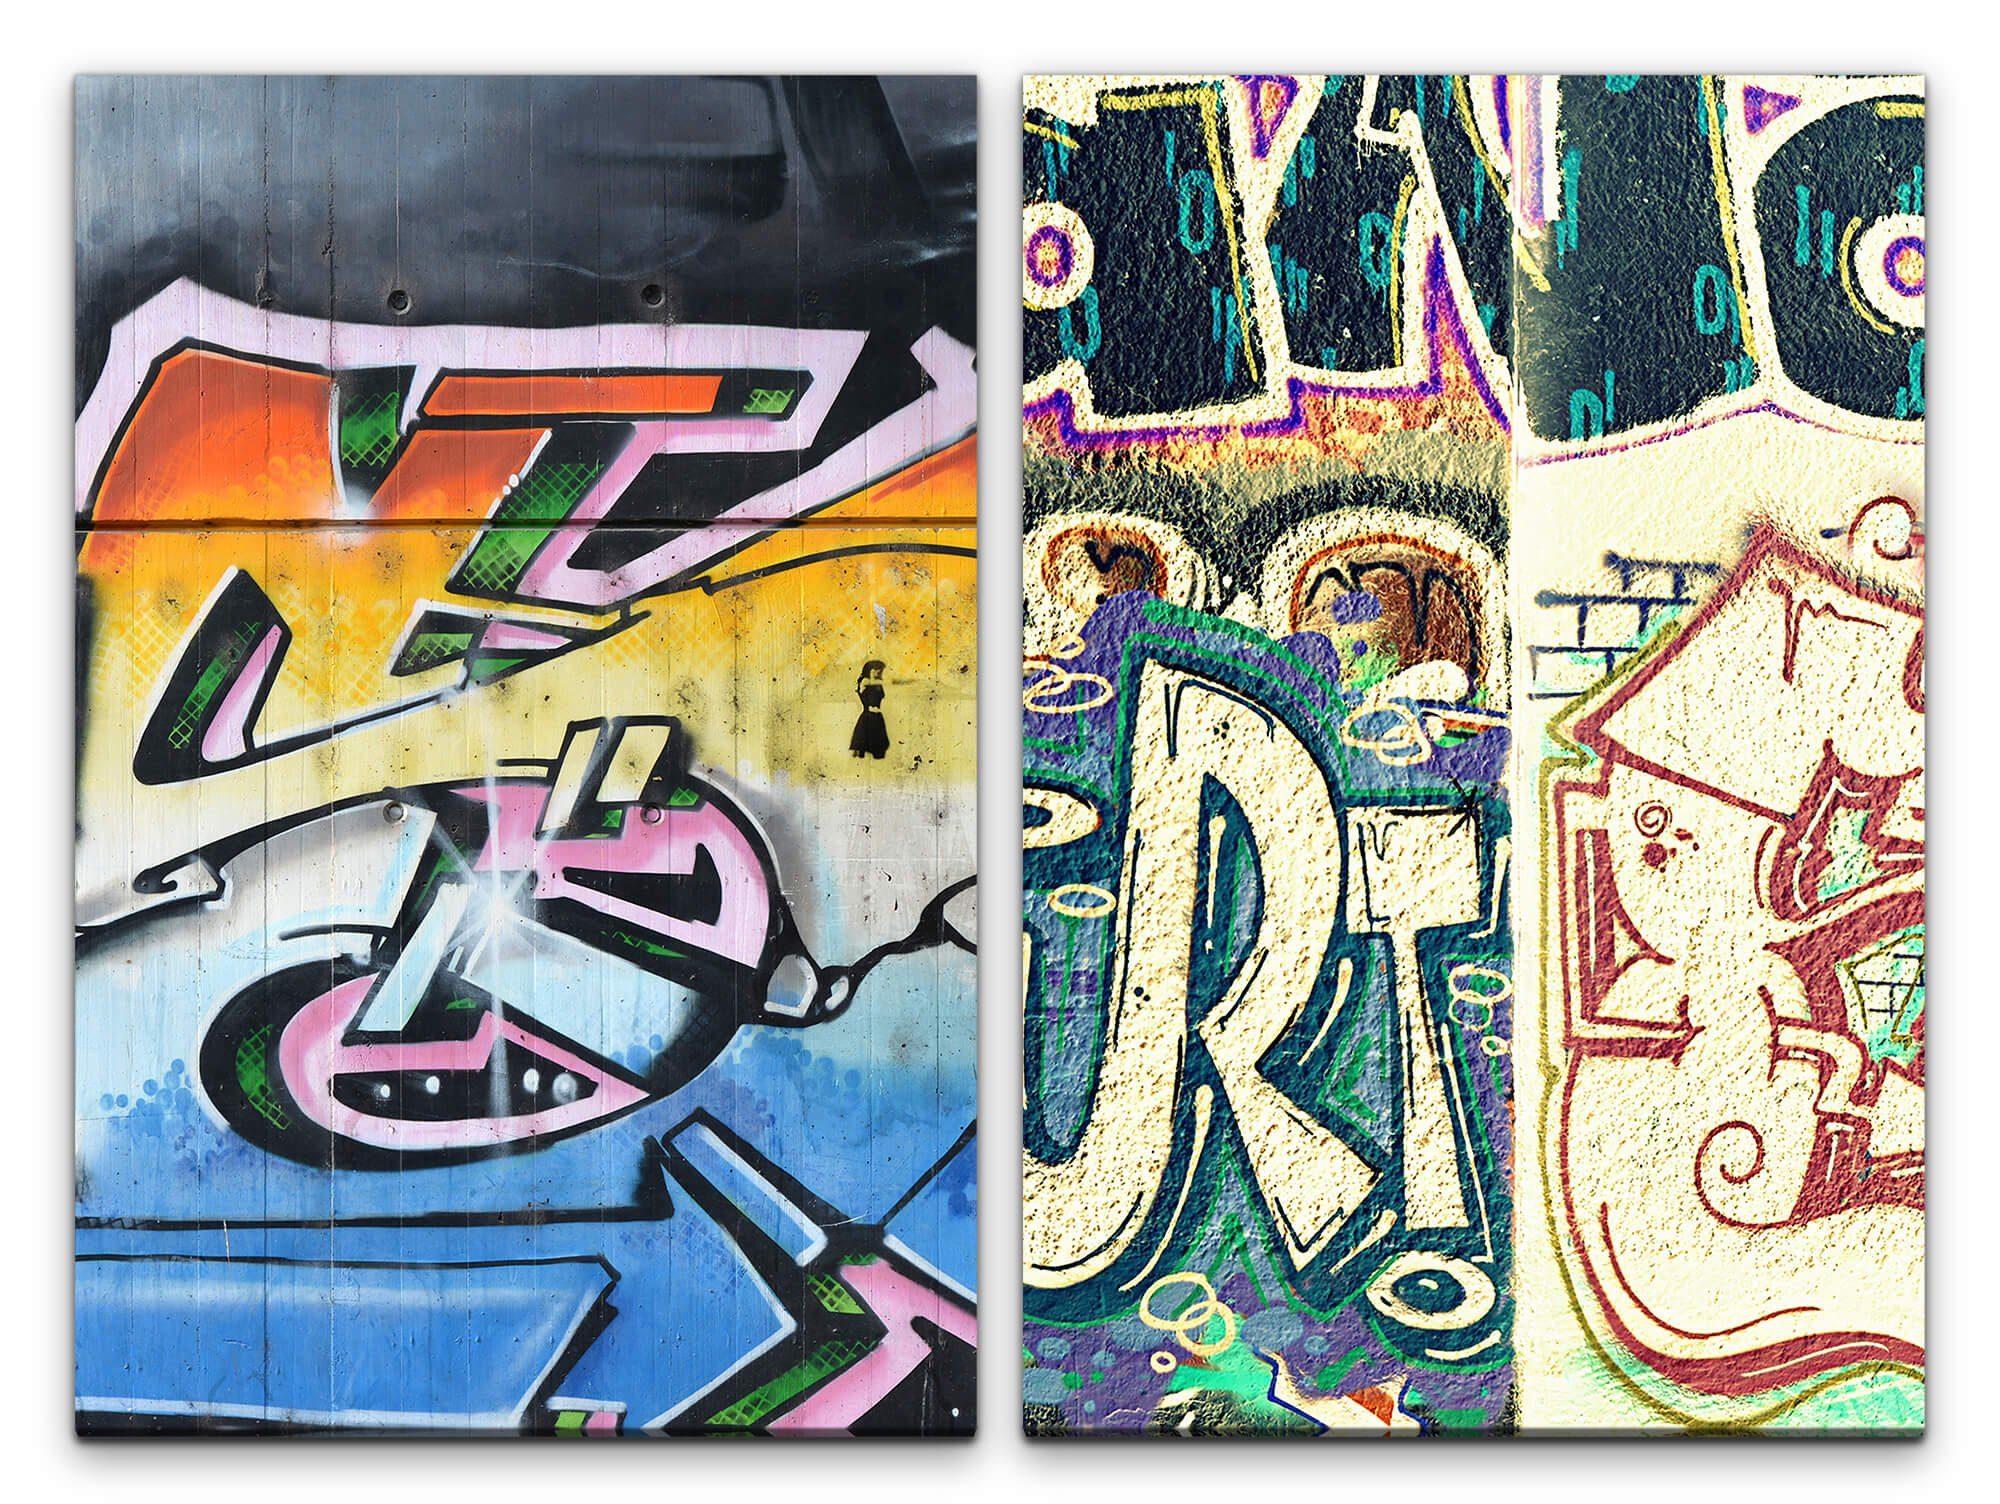 Sinus Art Leinwandbild 2 Bilder je 60x90cm Street Art Graffiti Tags Wand Hip Hop Jugendzimmer Bunt